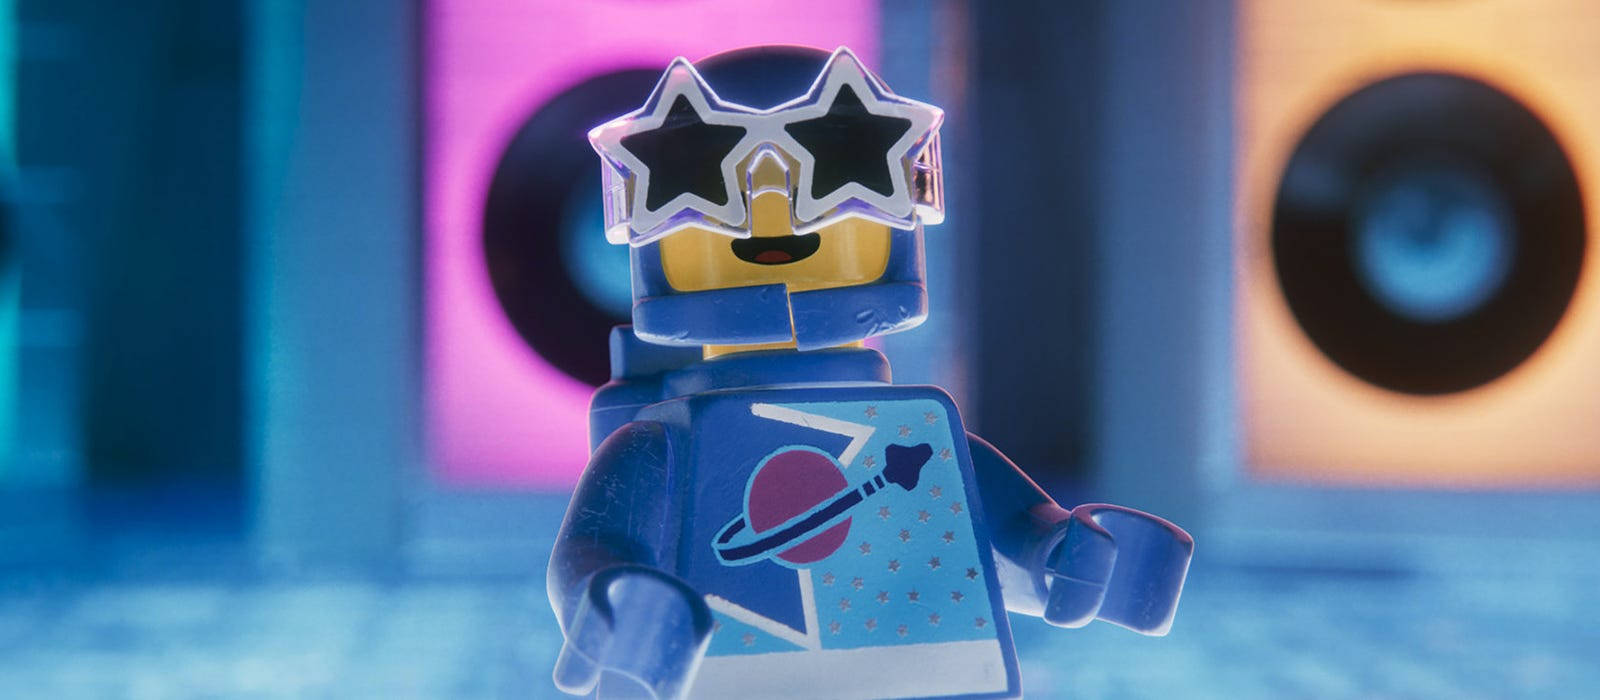 Lapelícula De Lego Astronauta Fondo de pantalla